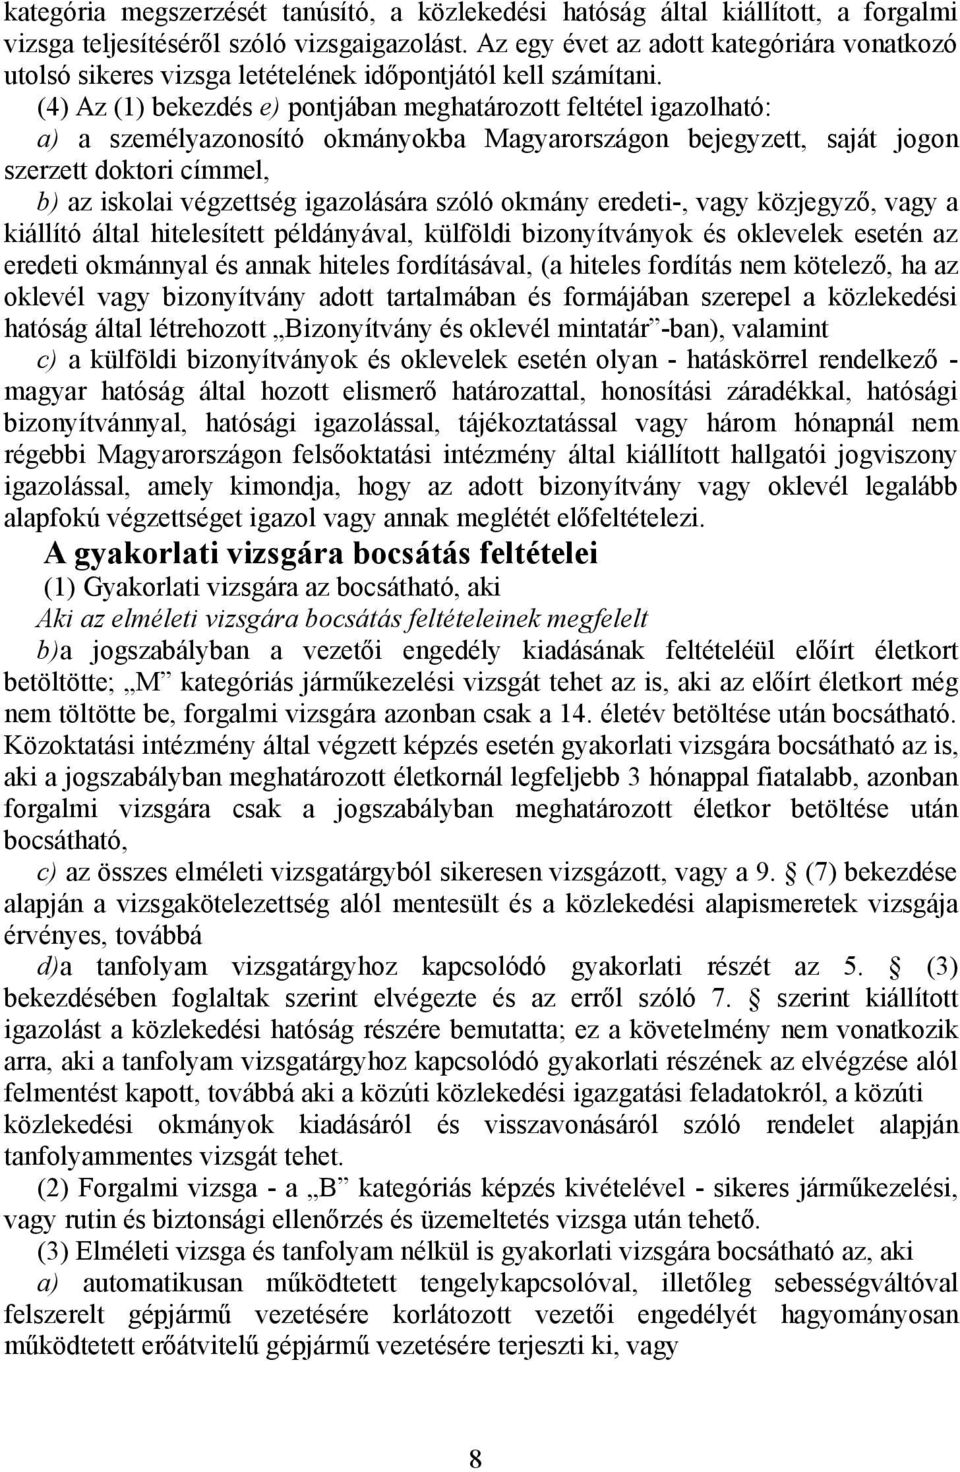 (4) Az (1) bekezdés e) pontjában meghatározott feltétel igazolható: a) a személyazonosító okmányokba Magyarországon bejegyzett, saját jogon szerzett doktori címmel, b) az iskolai végzettség